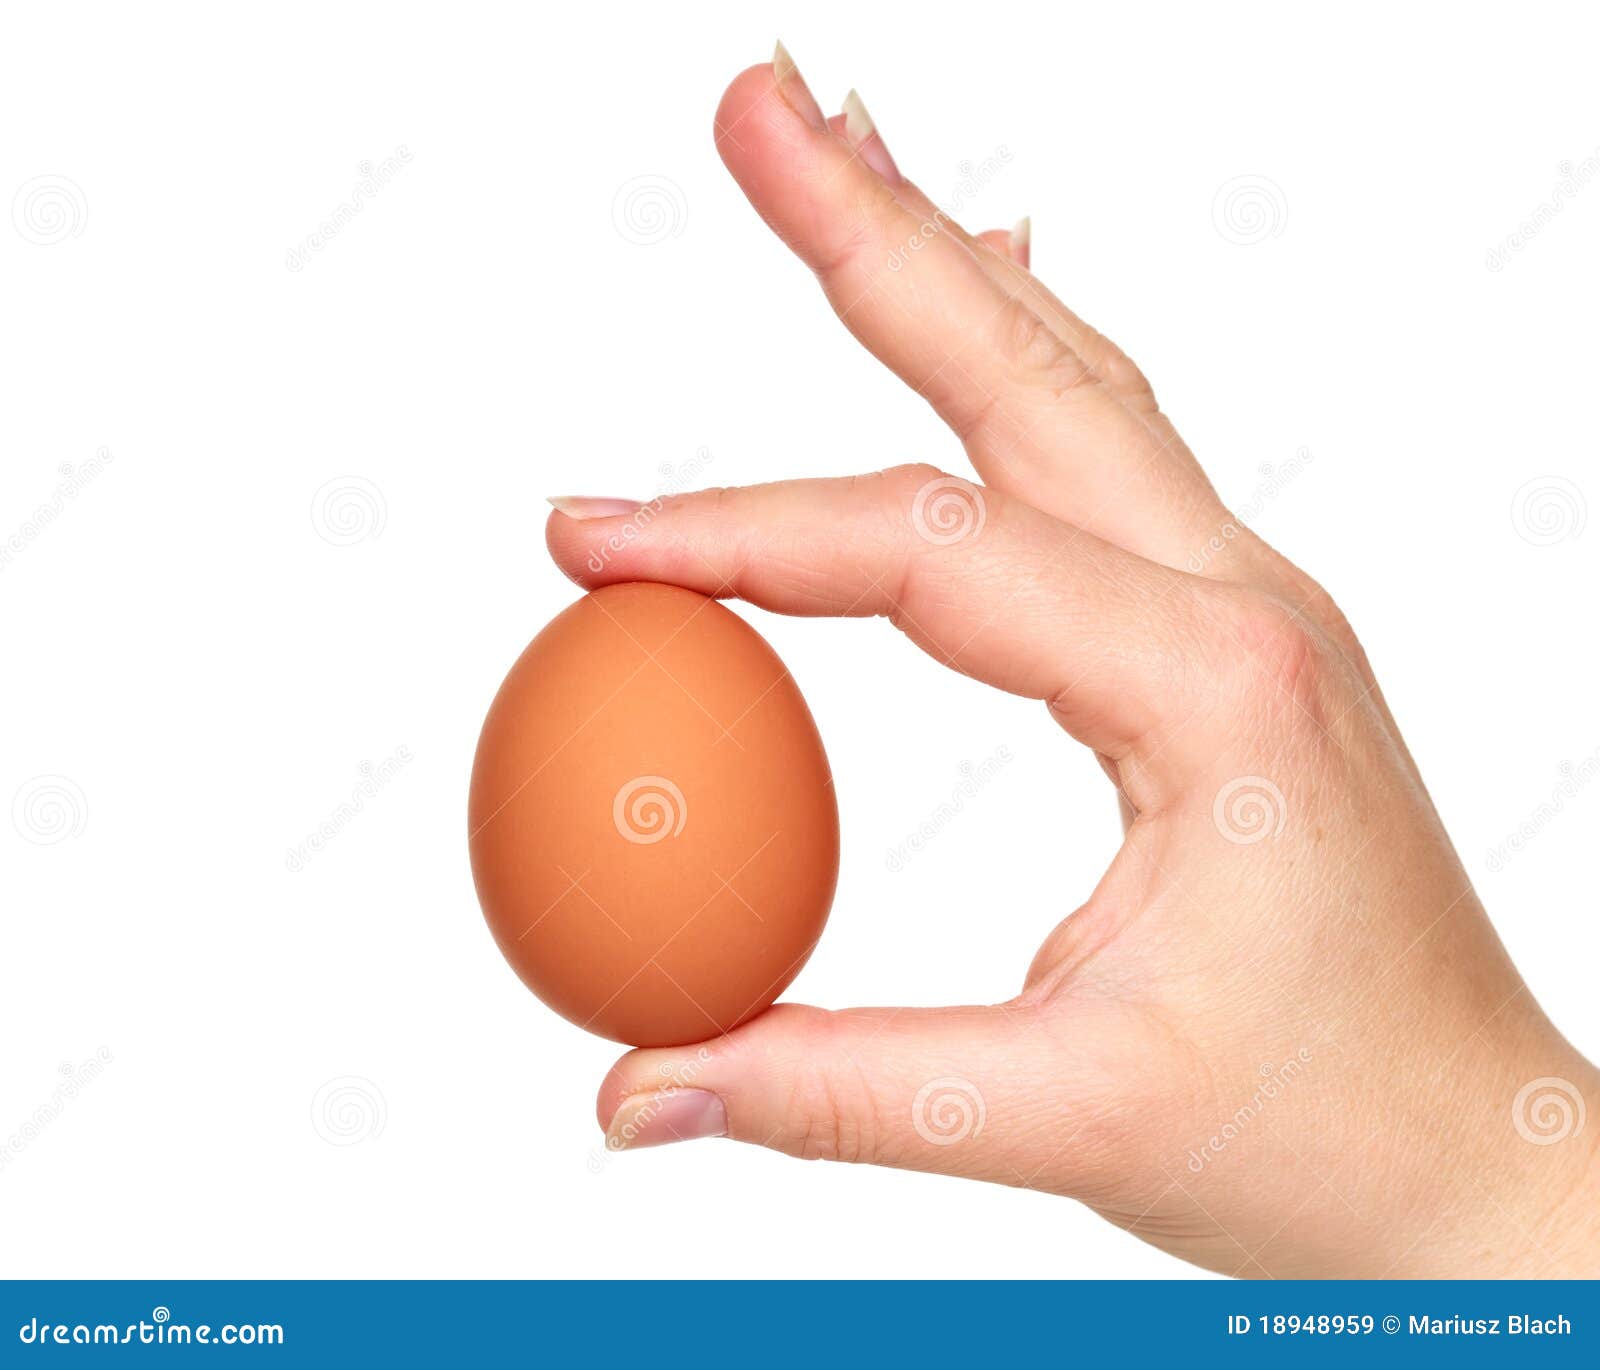 Девушка держит в руке яйцо картинки. Эскиз мошонка в руке. Взять на руки яйцо картинки. Мужик держит два яйца в руке.